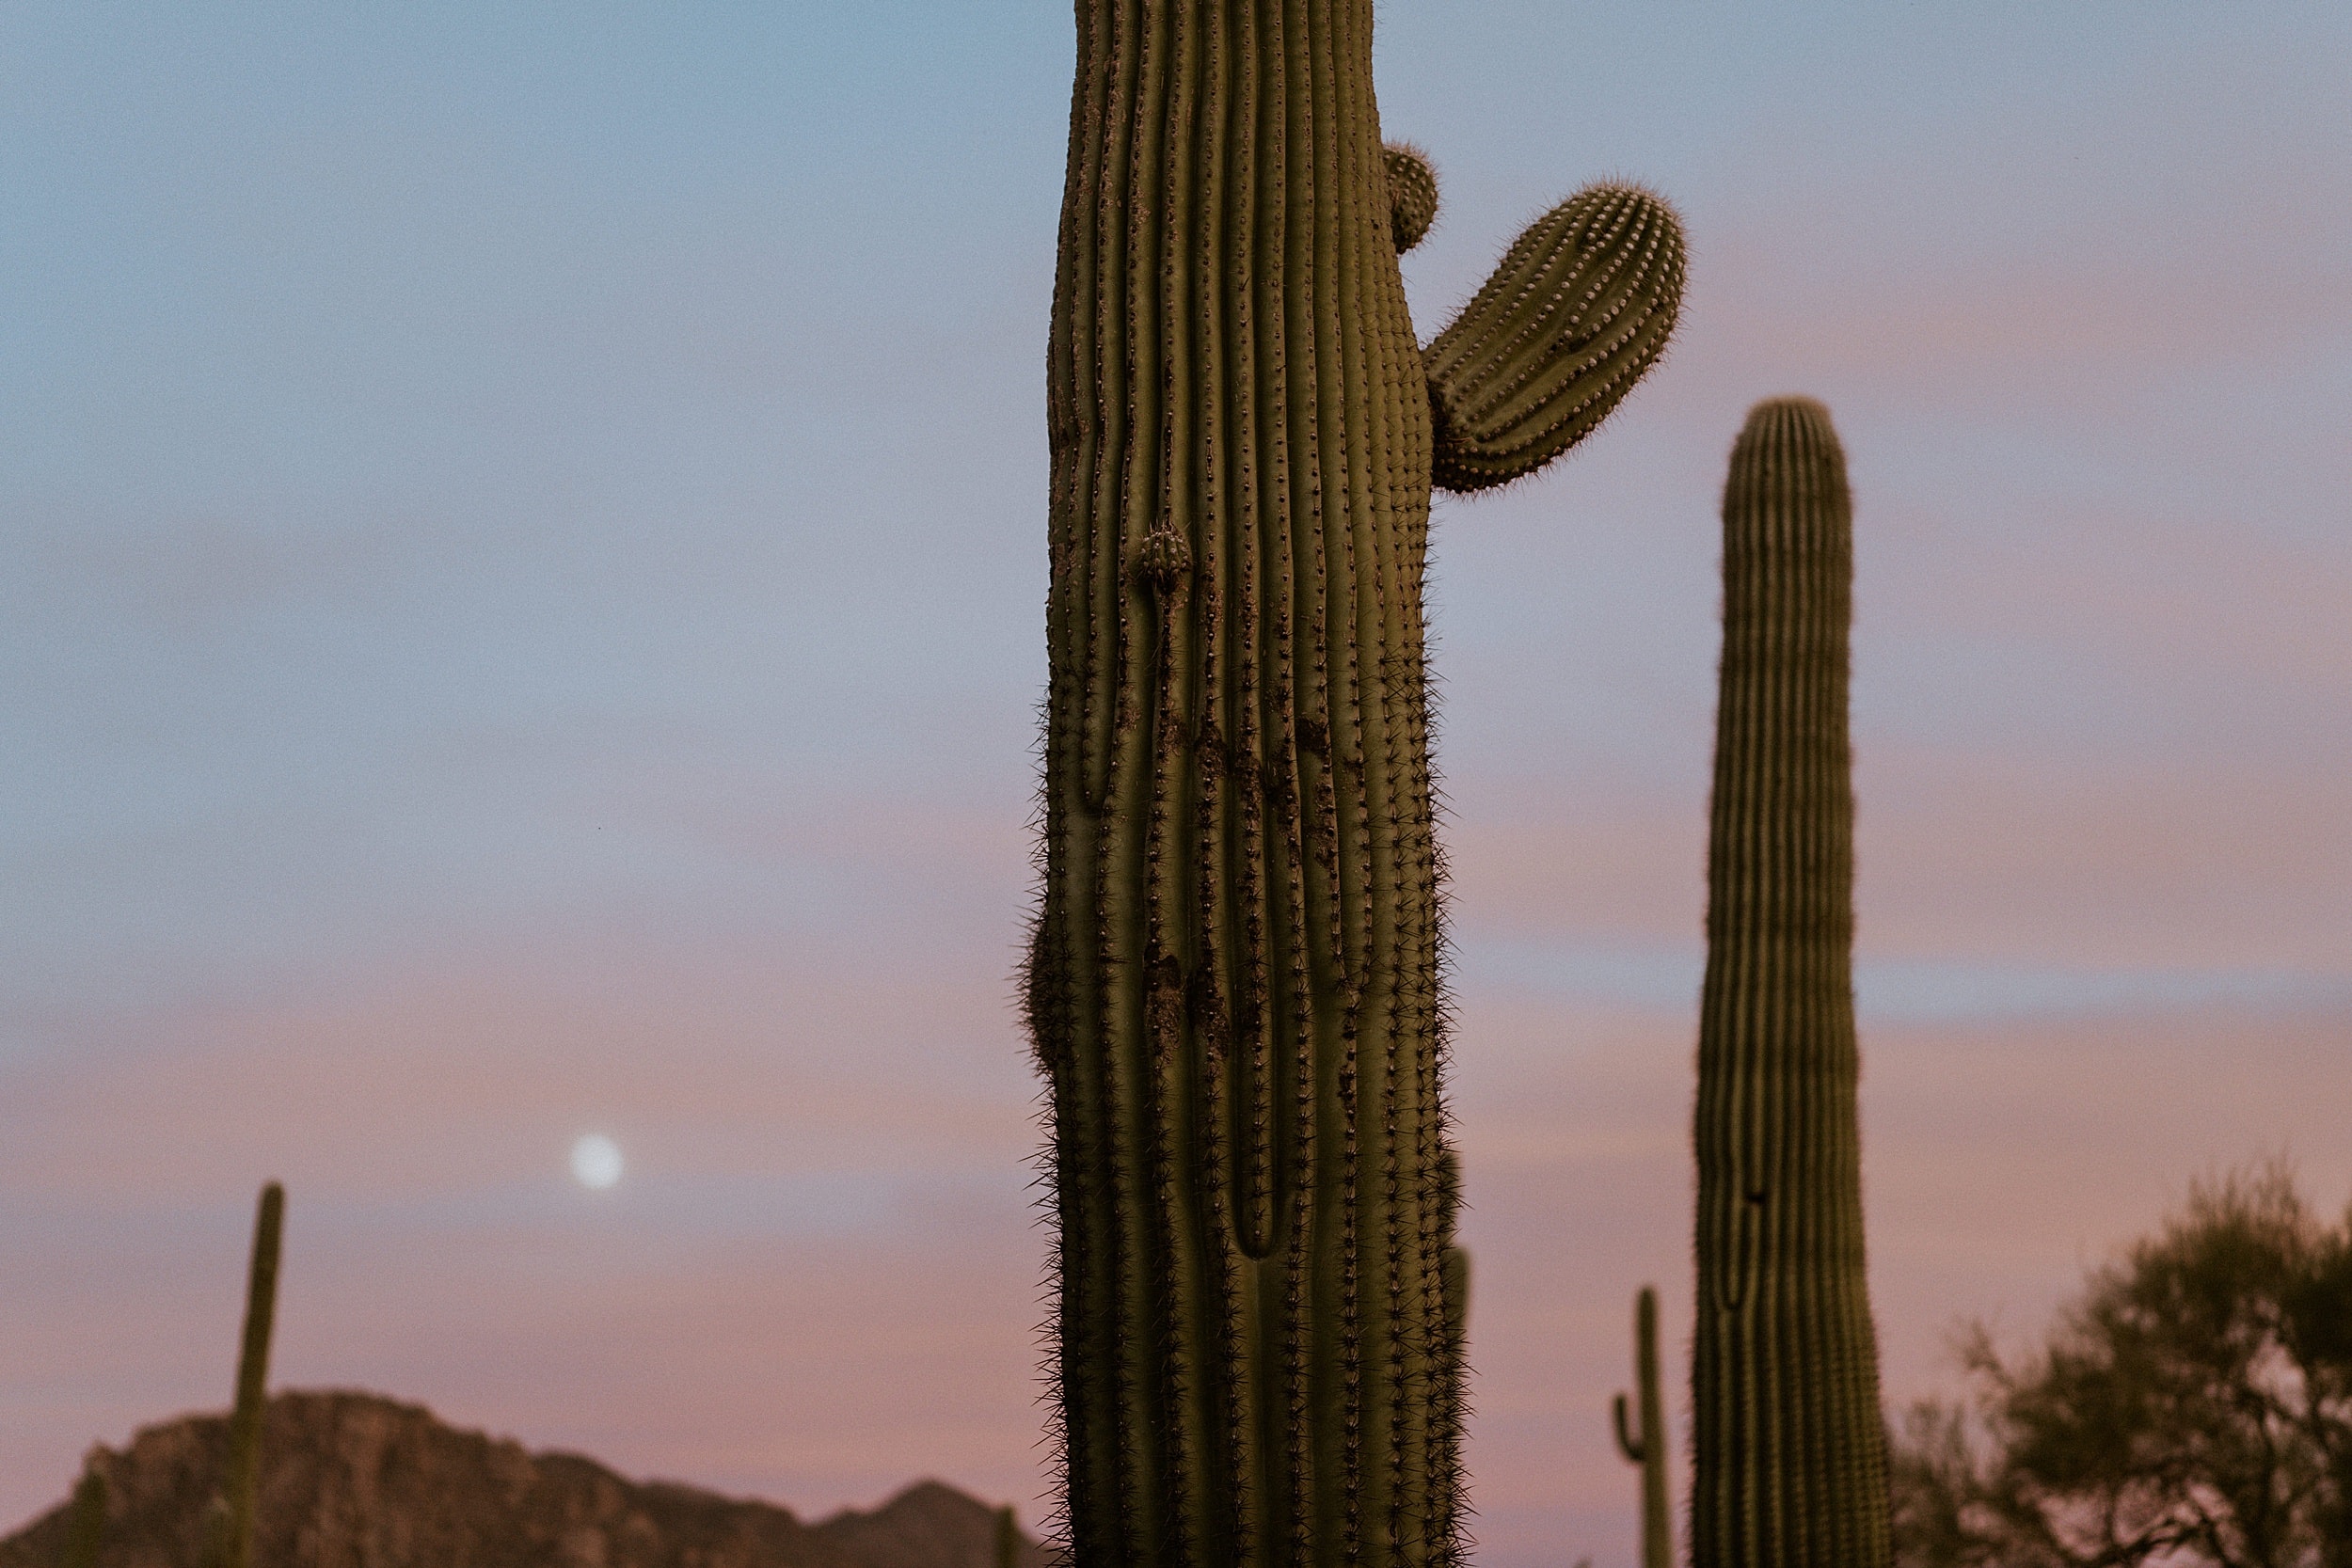 cactus during sunset at saguaro national park 